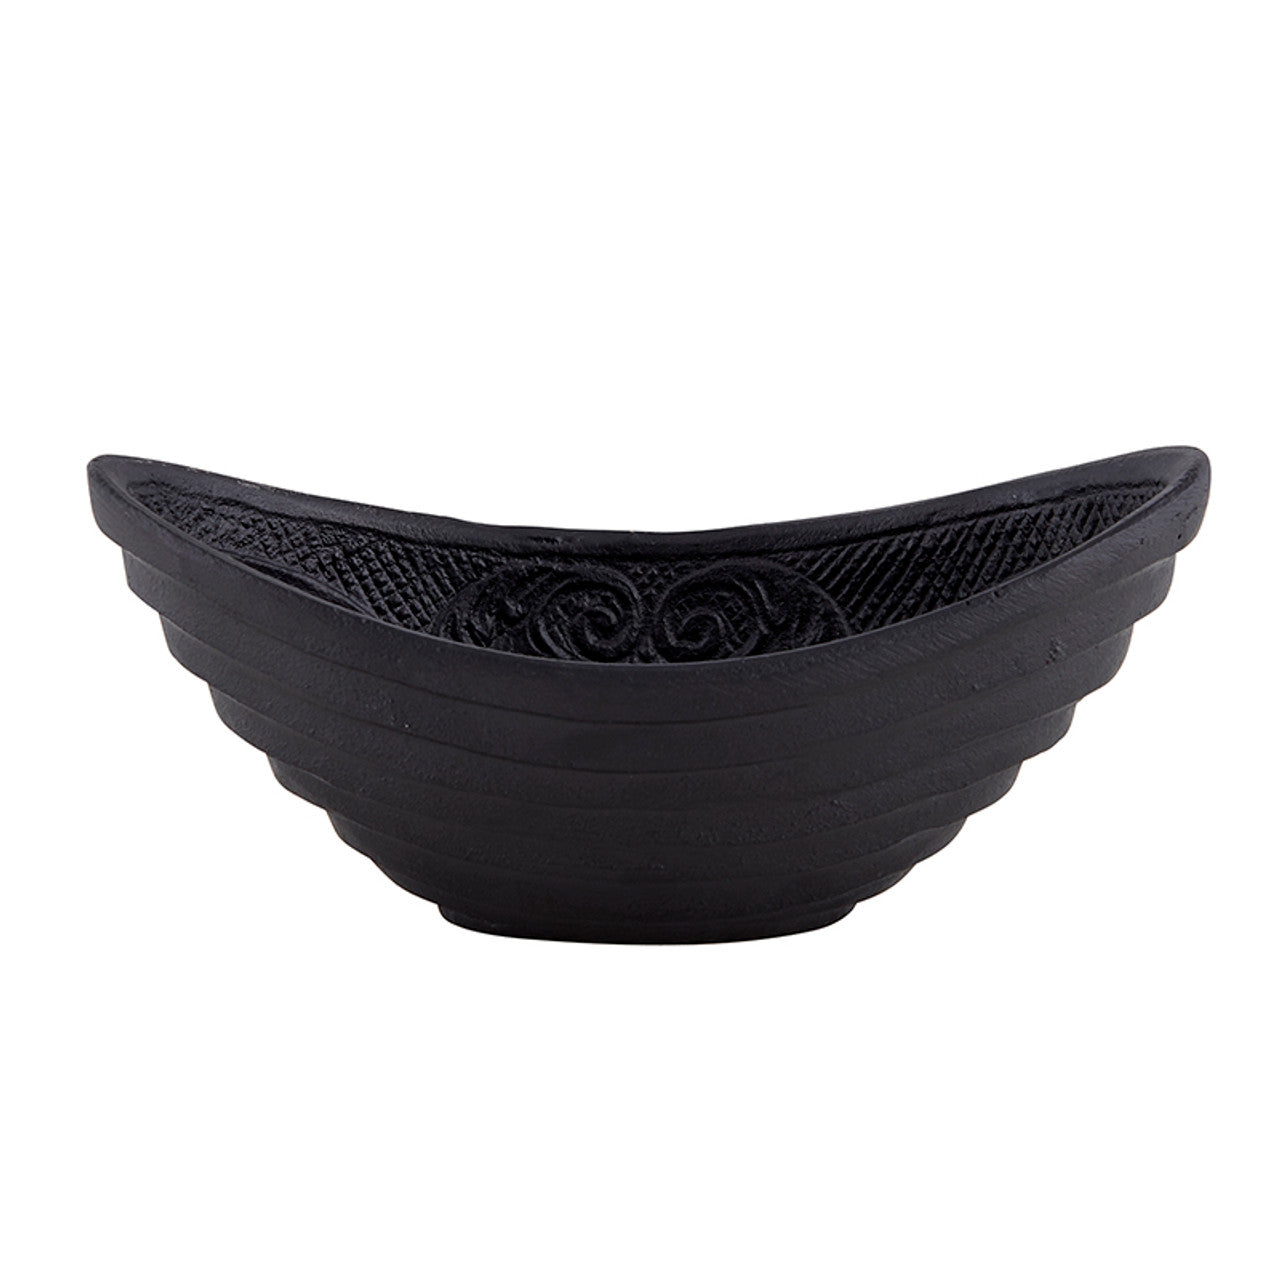 Gothic Cast Iron Oval Bowl | Black Versatile Serving Bowl | 6.5" x 3" x 2.75"